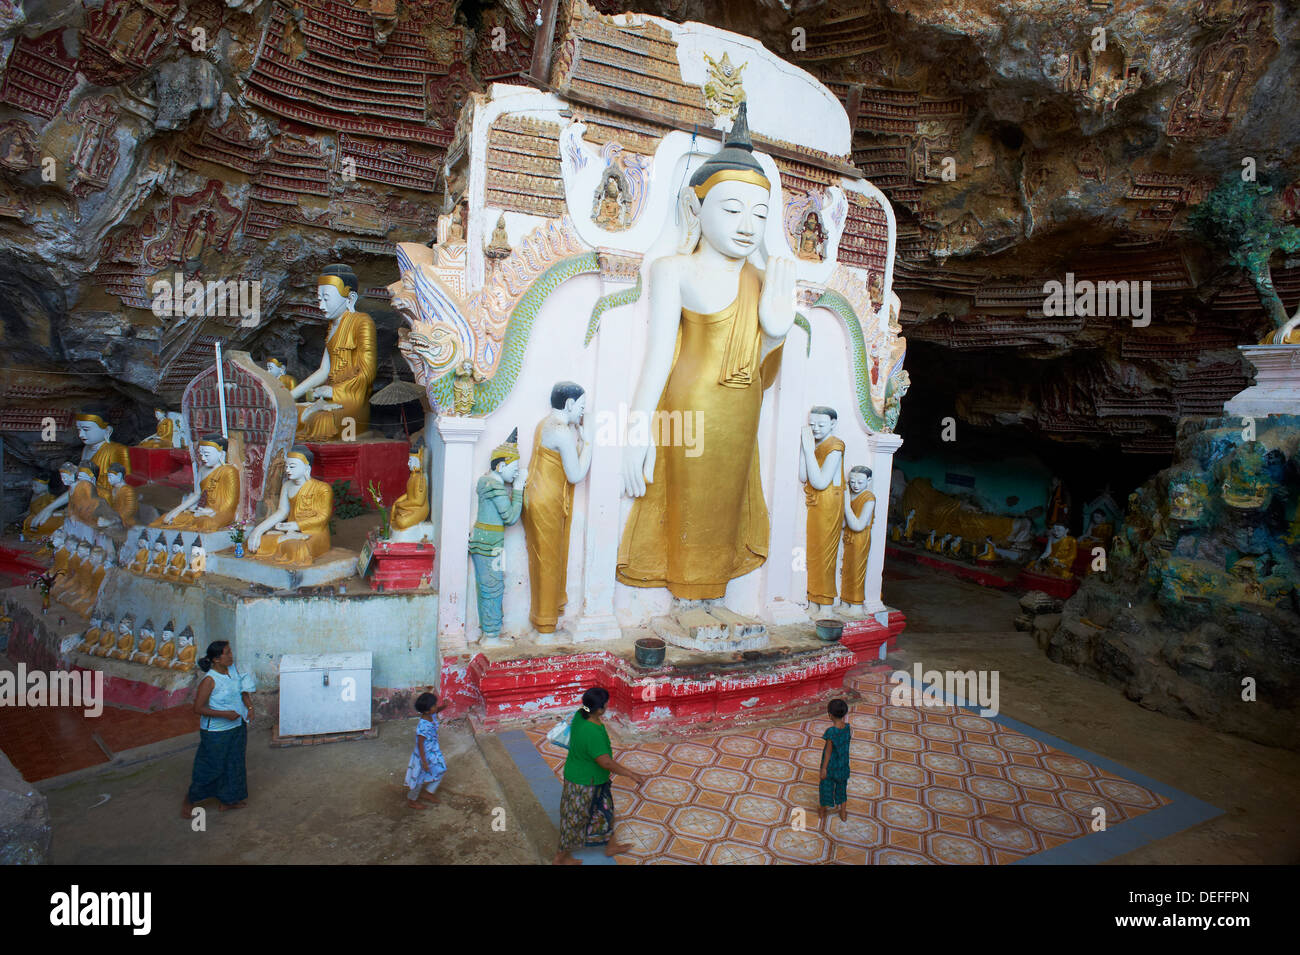 Statues of the Buddha at the Kawgun Buddhist Cave, near Hpa-An, Karen (Kayin) State, Myanmar (Burma), Asia Stock Photo